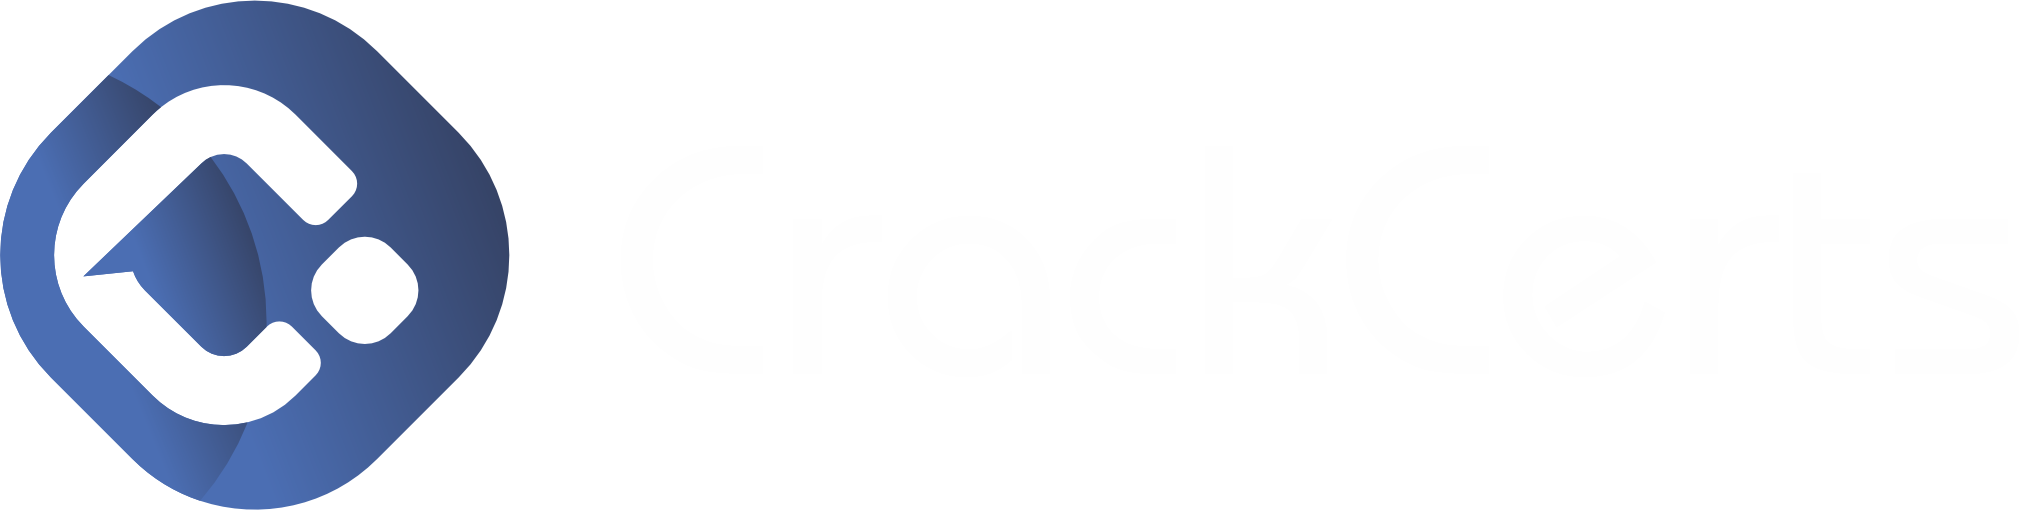 CrackCerts footer logo